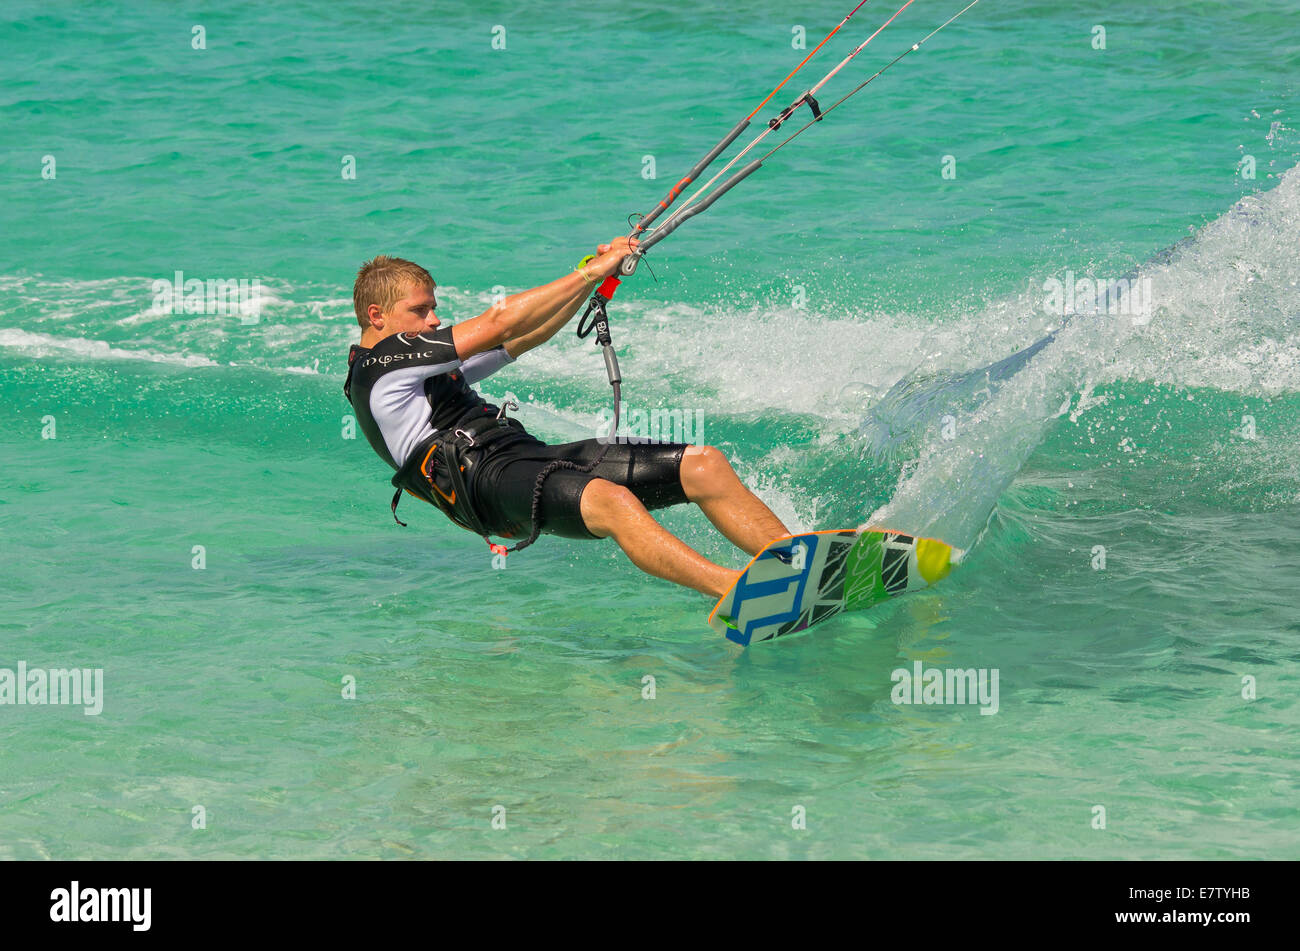 L'uomo kite surf sulla playa del medano, Corralejo. Foto Stock